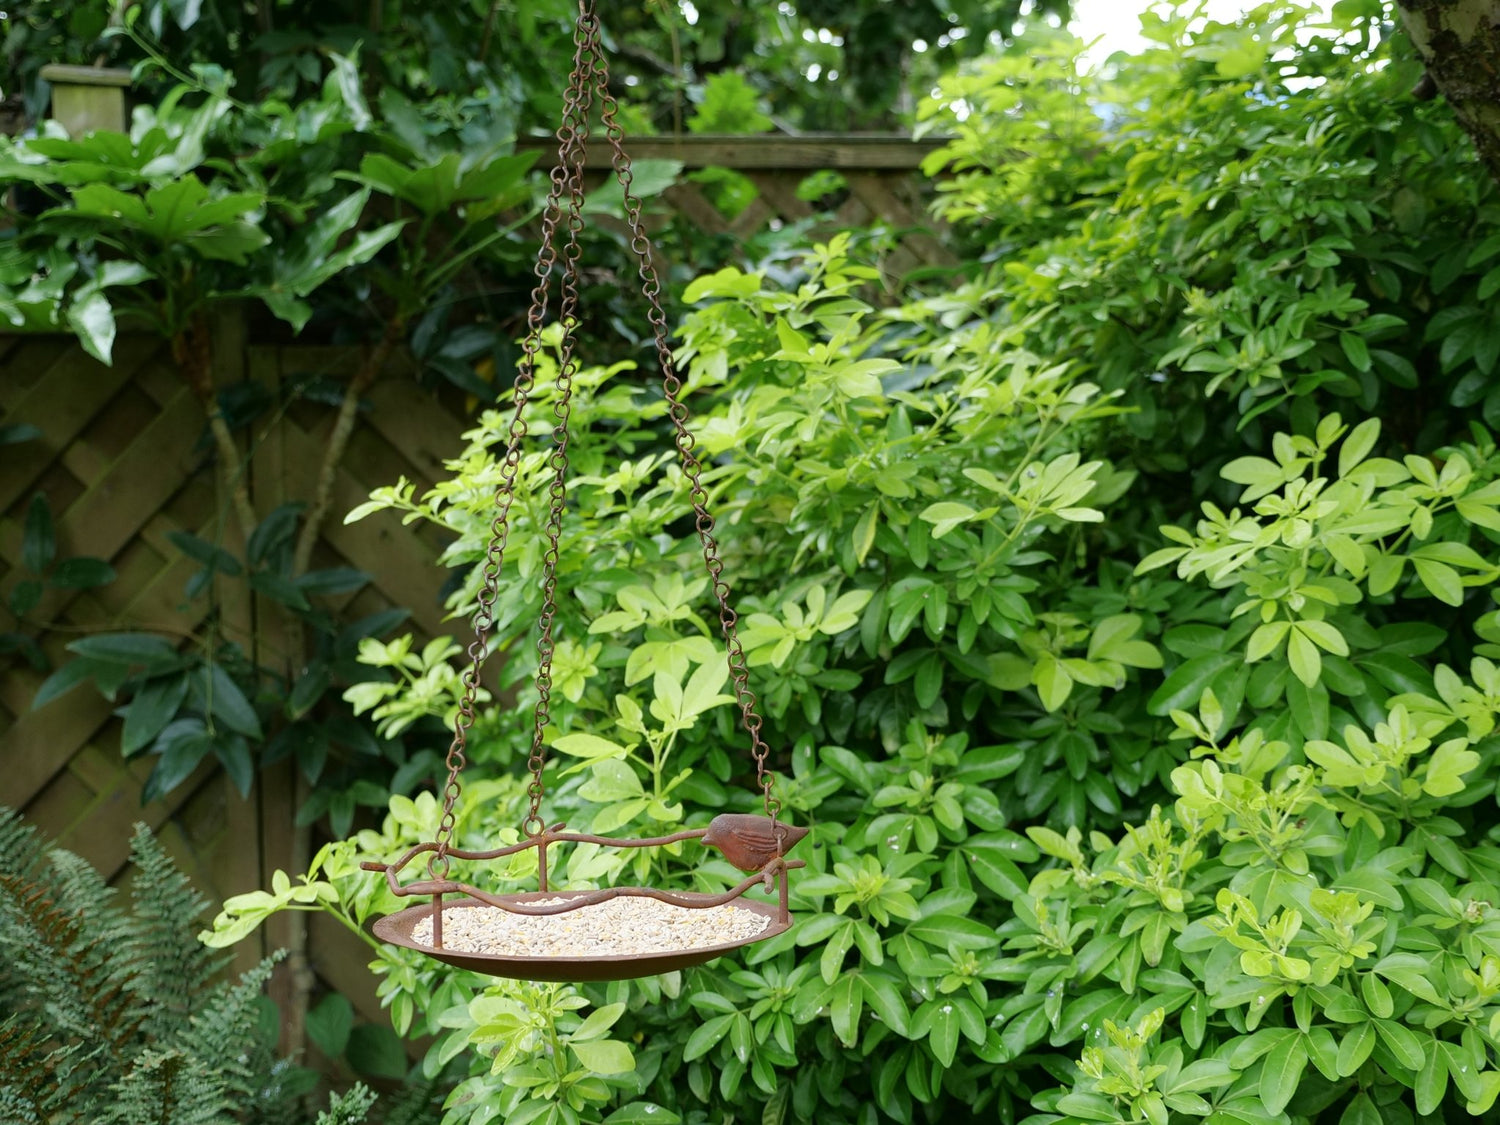 Bagpath - Hanging Bird Feeder - The Irish Gardener Store